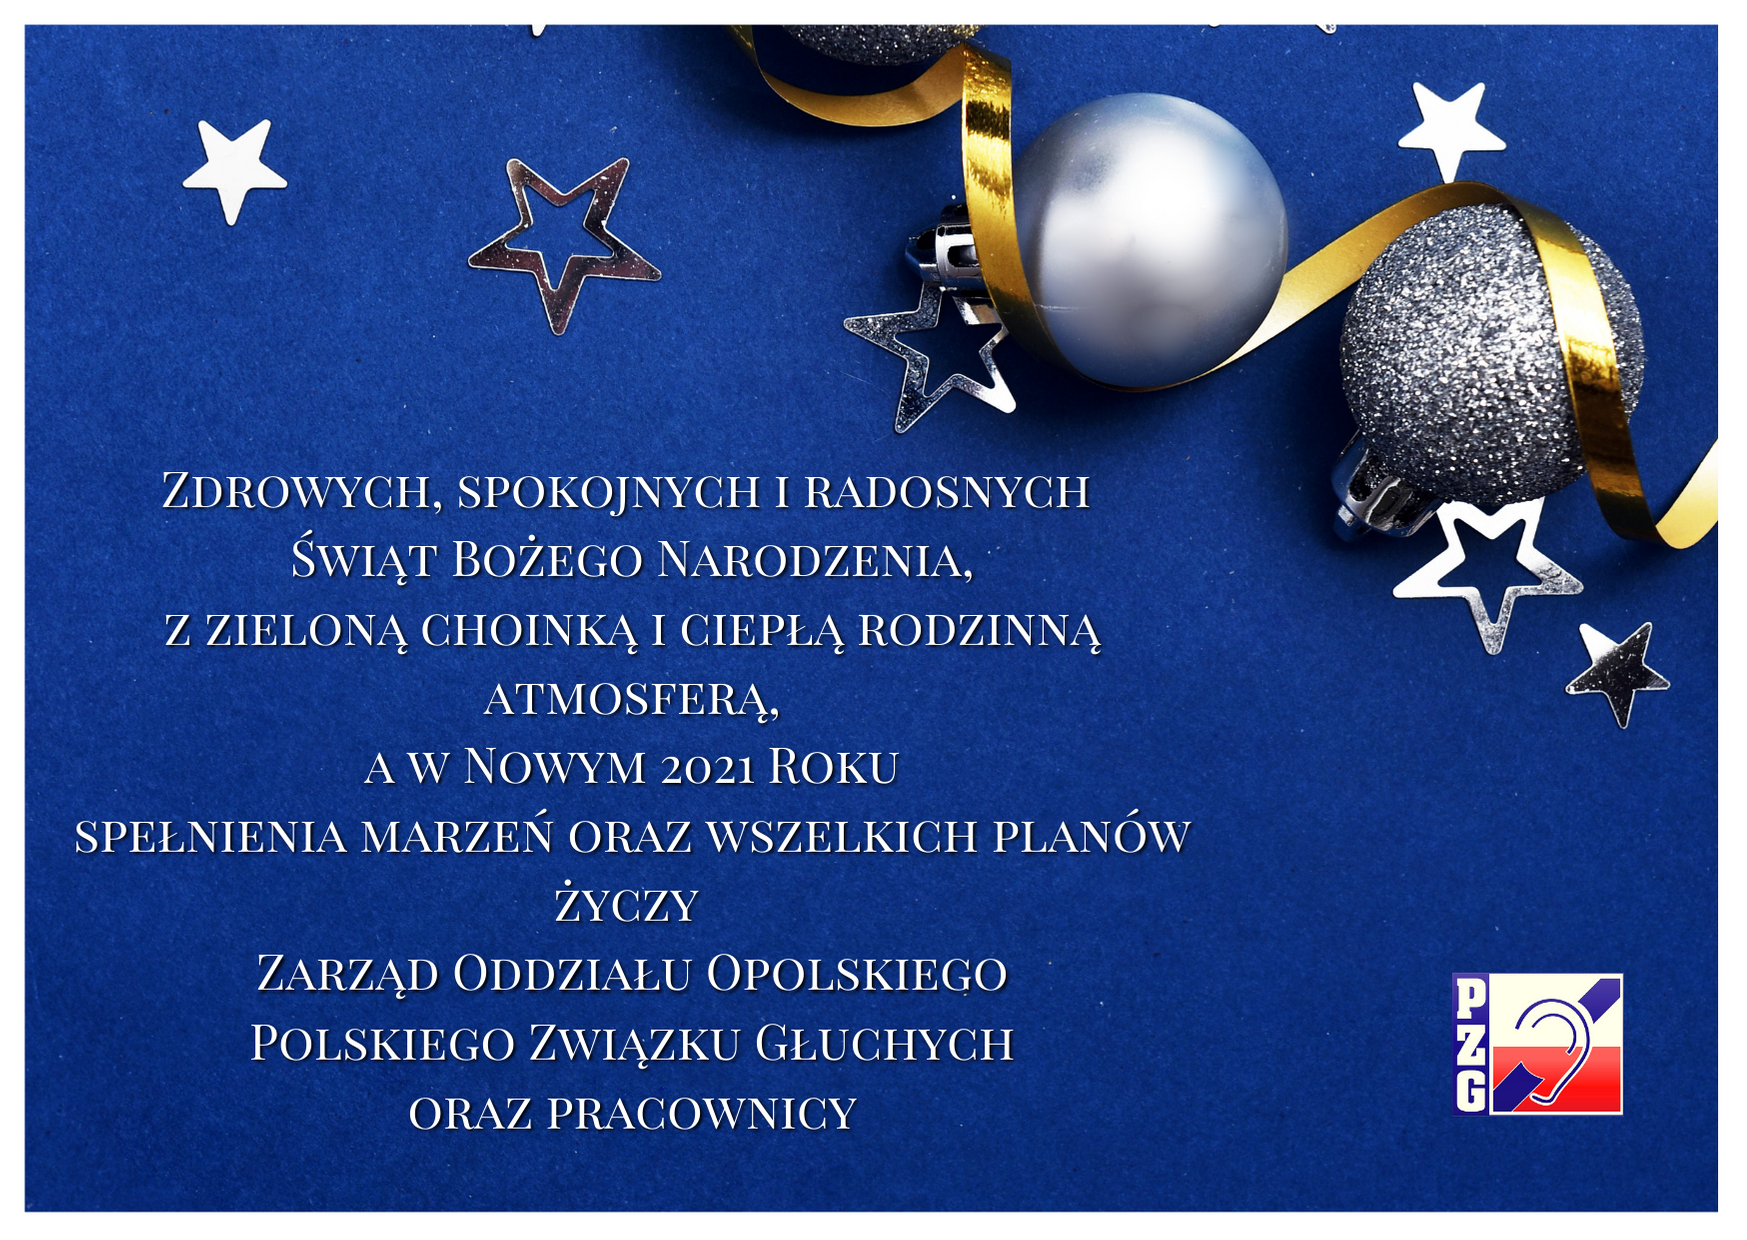 Życzenia Bożonarodzeniowe od PZG Opole